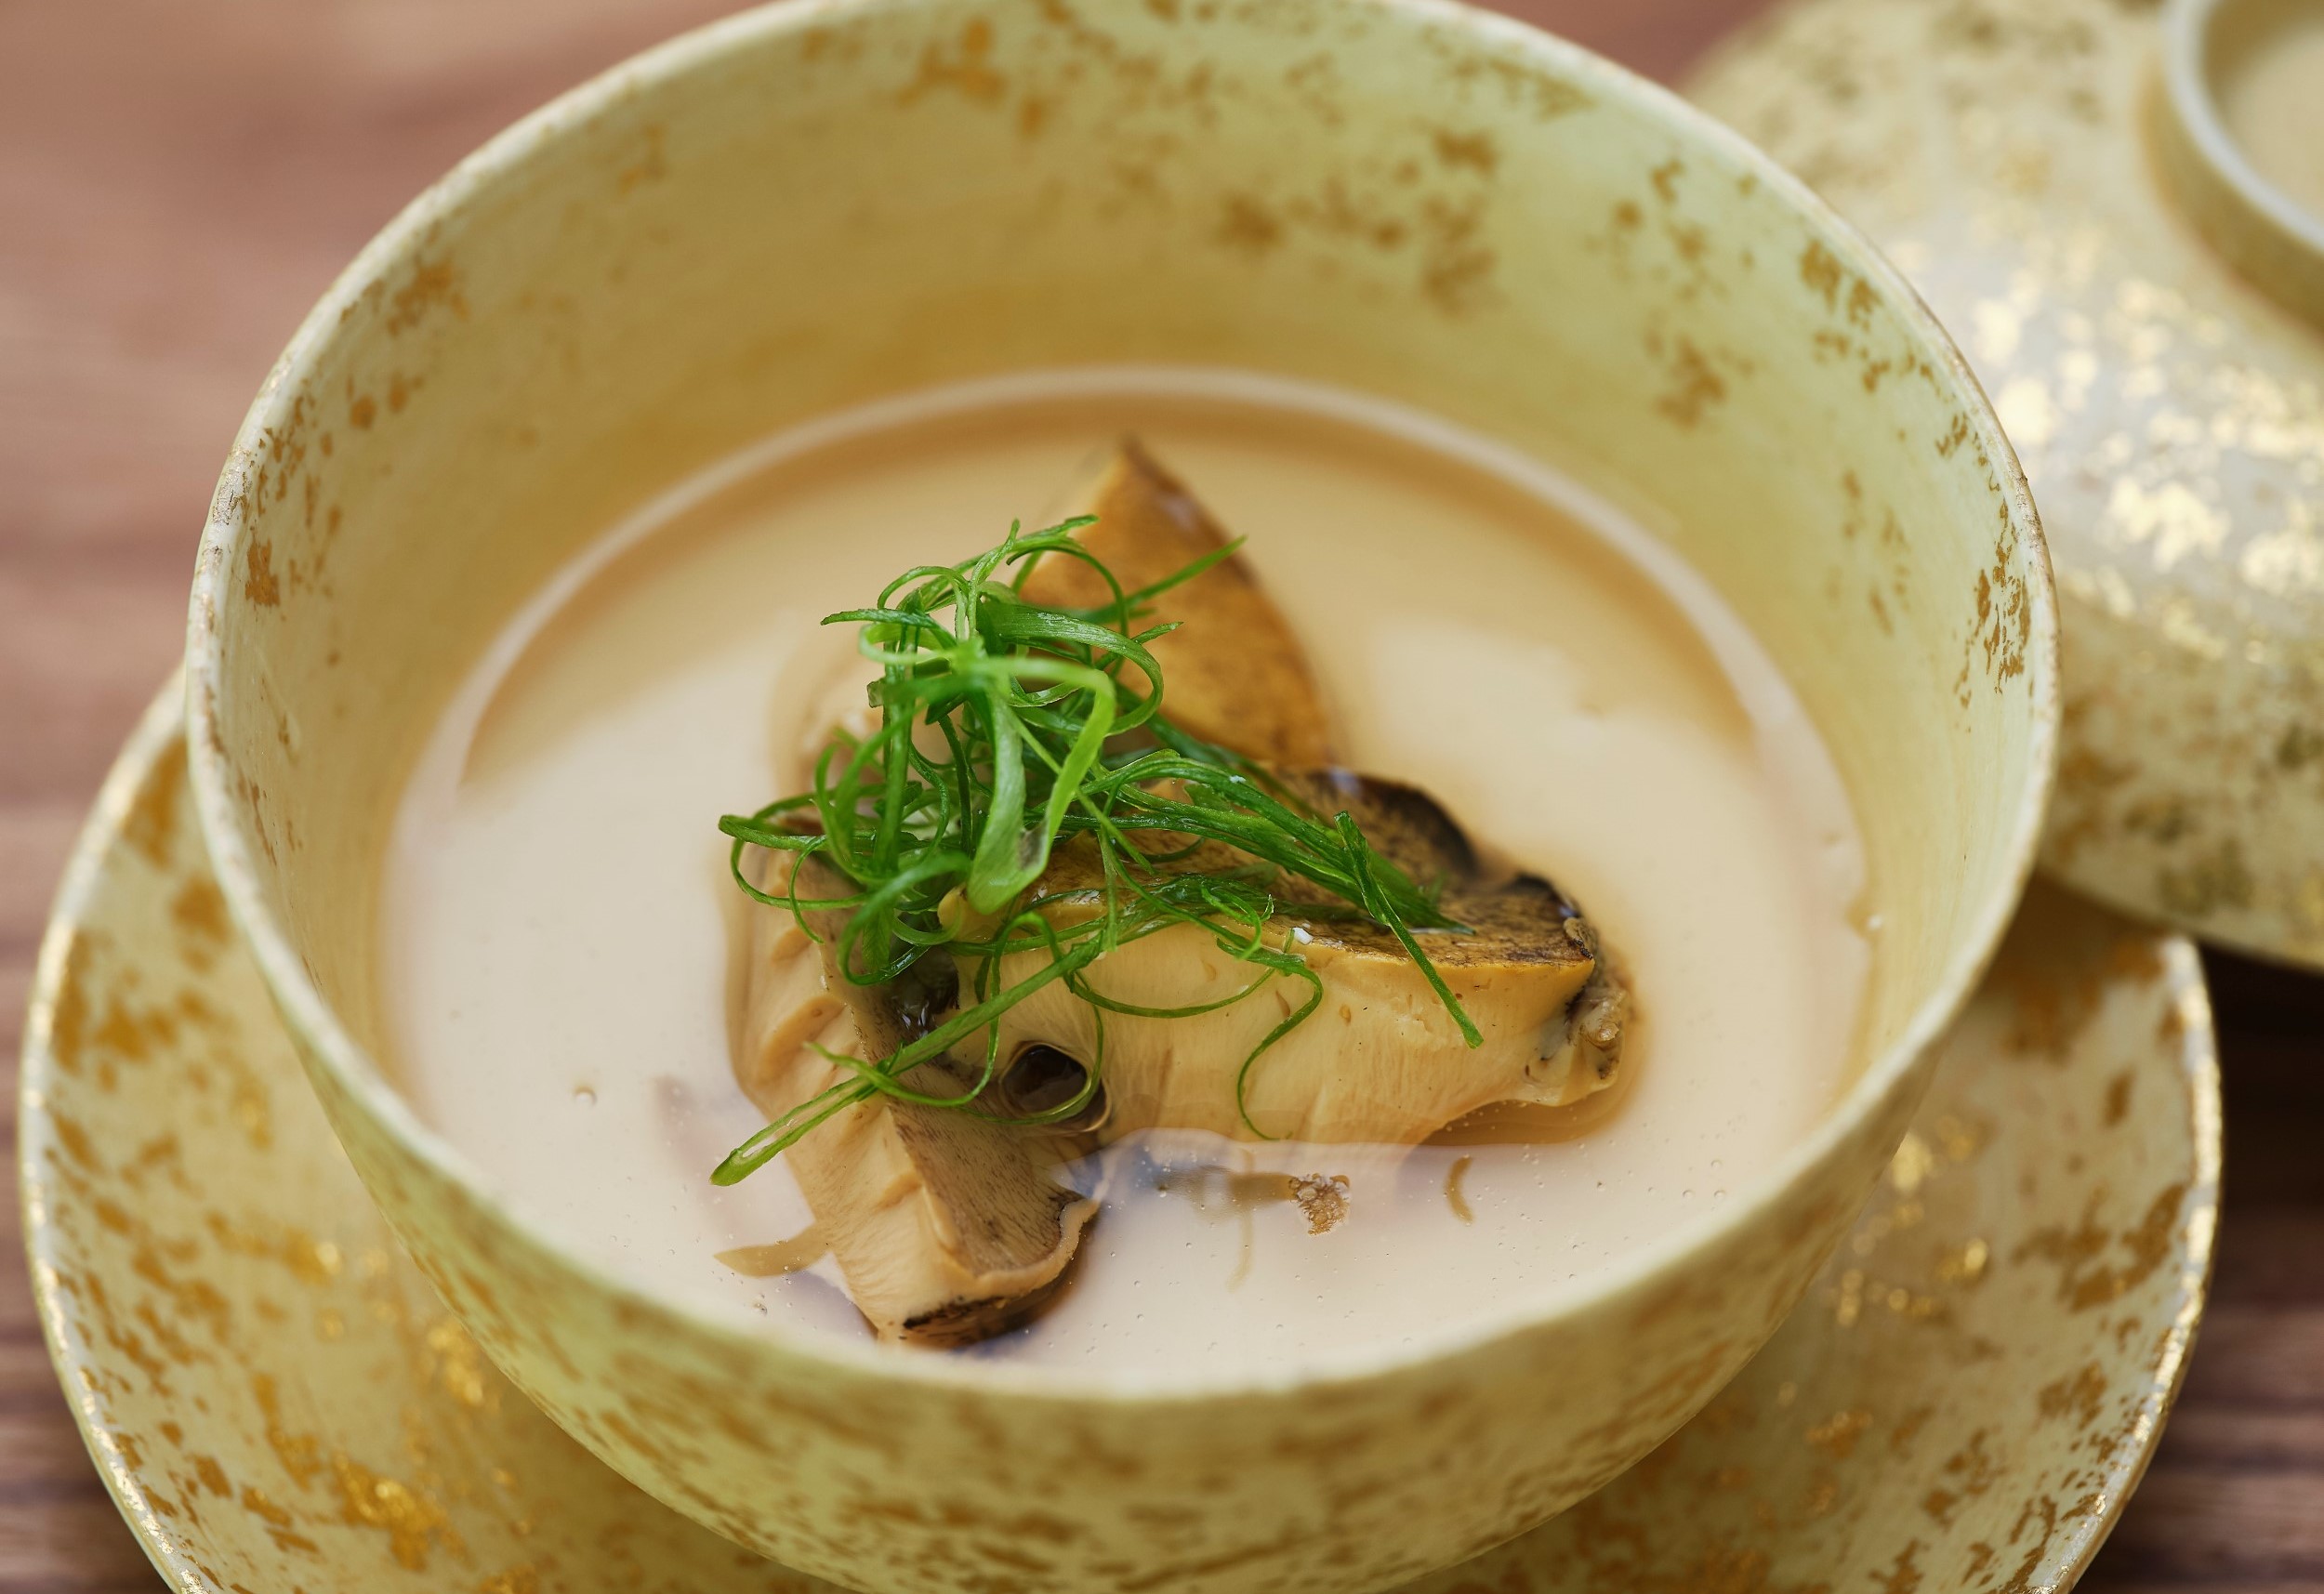 嫩如豆花的自家製豆腐與鮮鮑上淋了鱉湯為羹，是極具日式季節風情的組合。